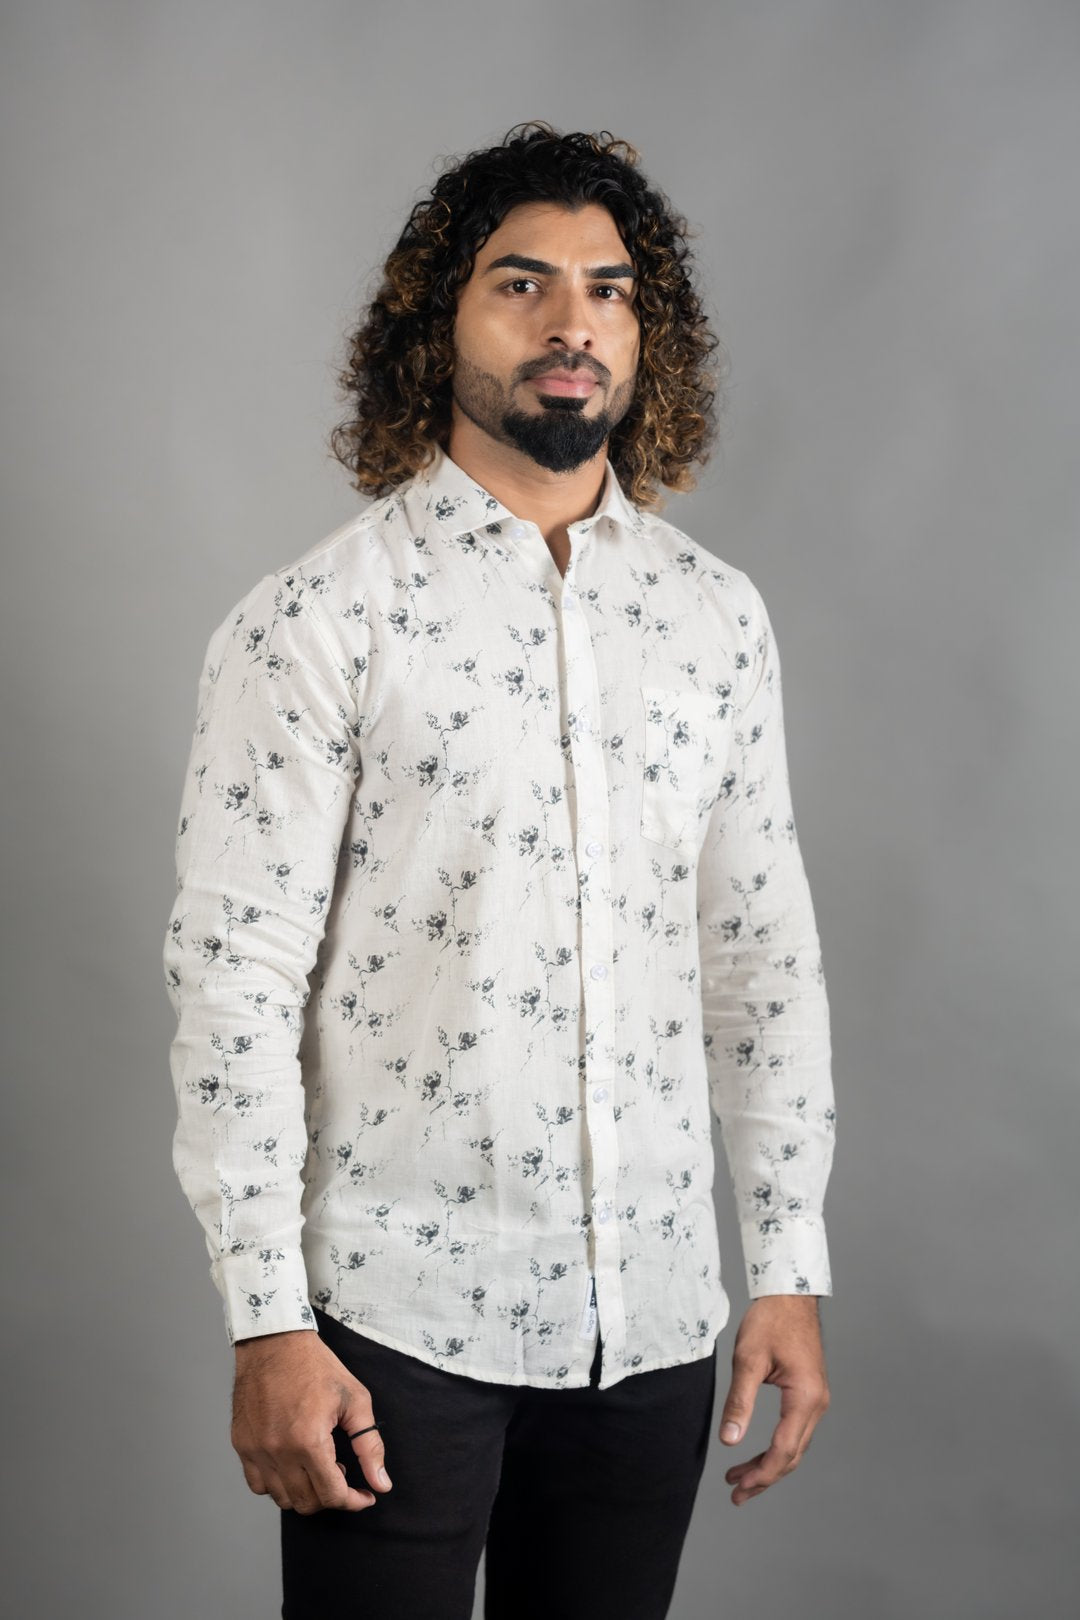 Huginn and Muninn Most Trendy White Floral Shirt for Men